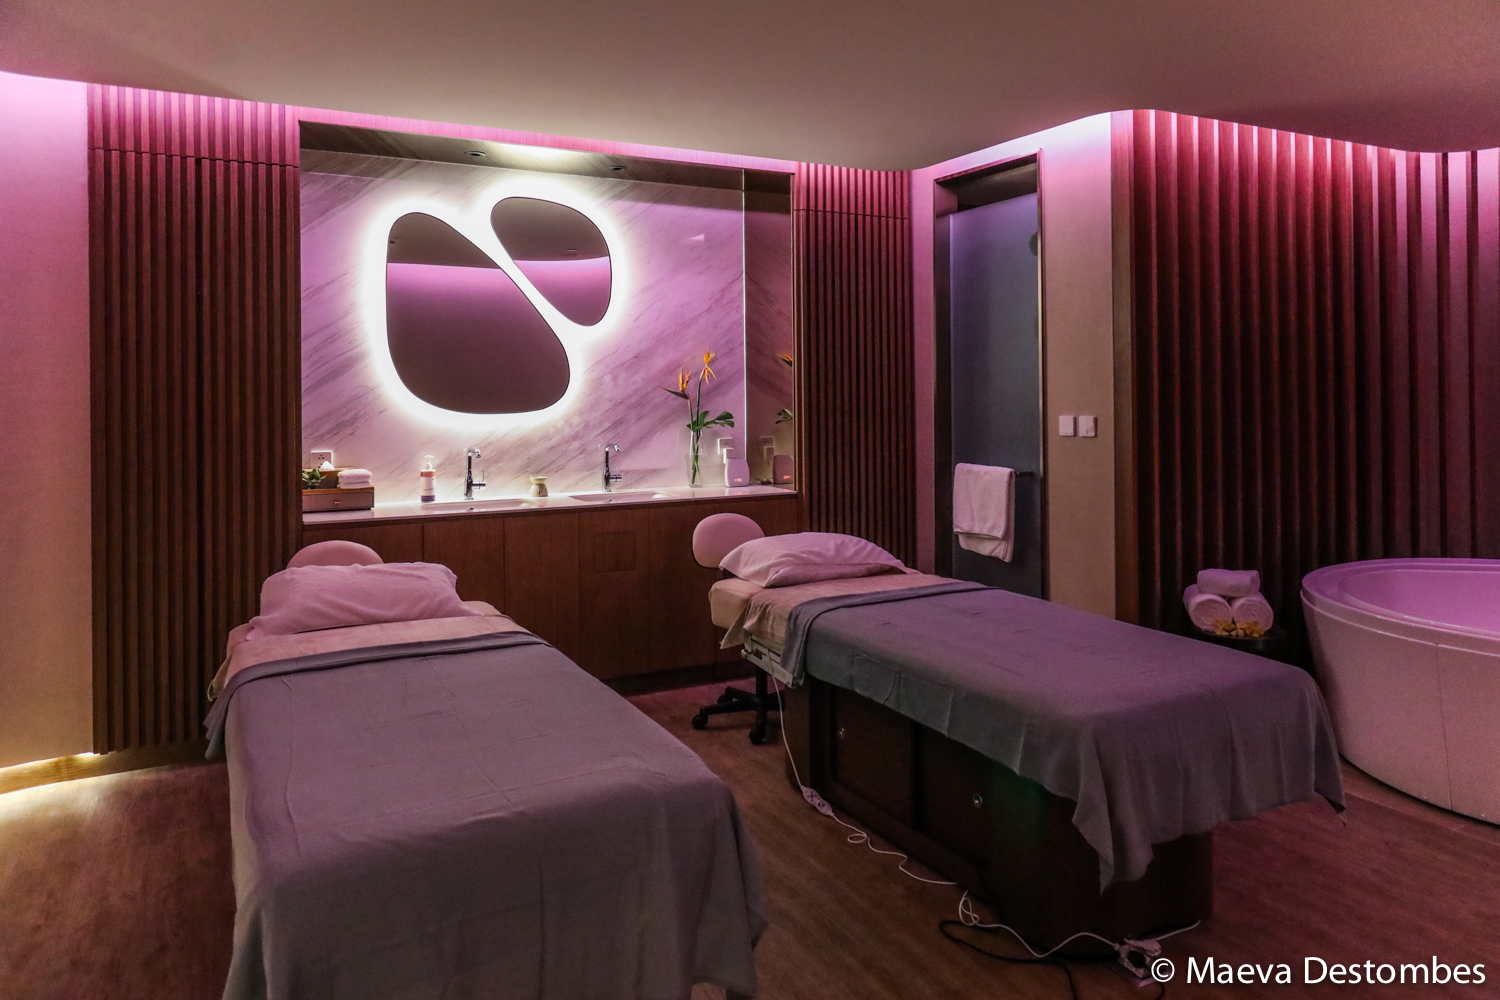 Une salle du spa dans les tons mauve avec deux tables de massages et deux miroirs arrondis.